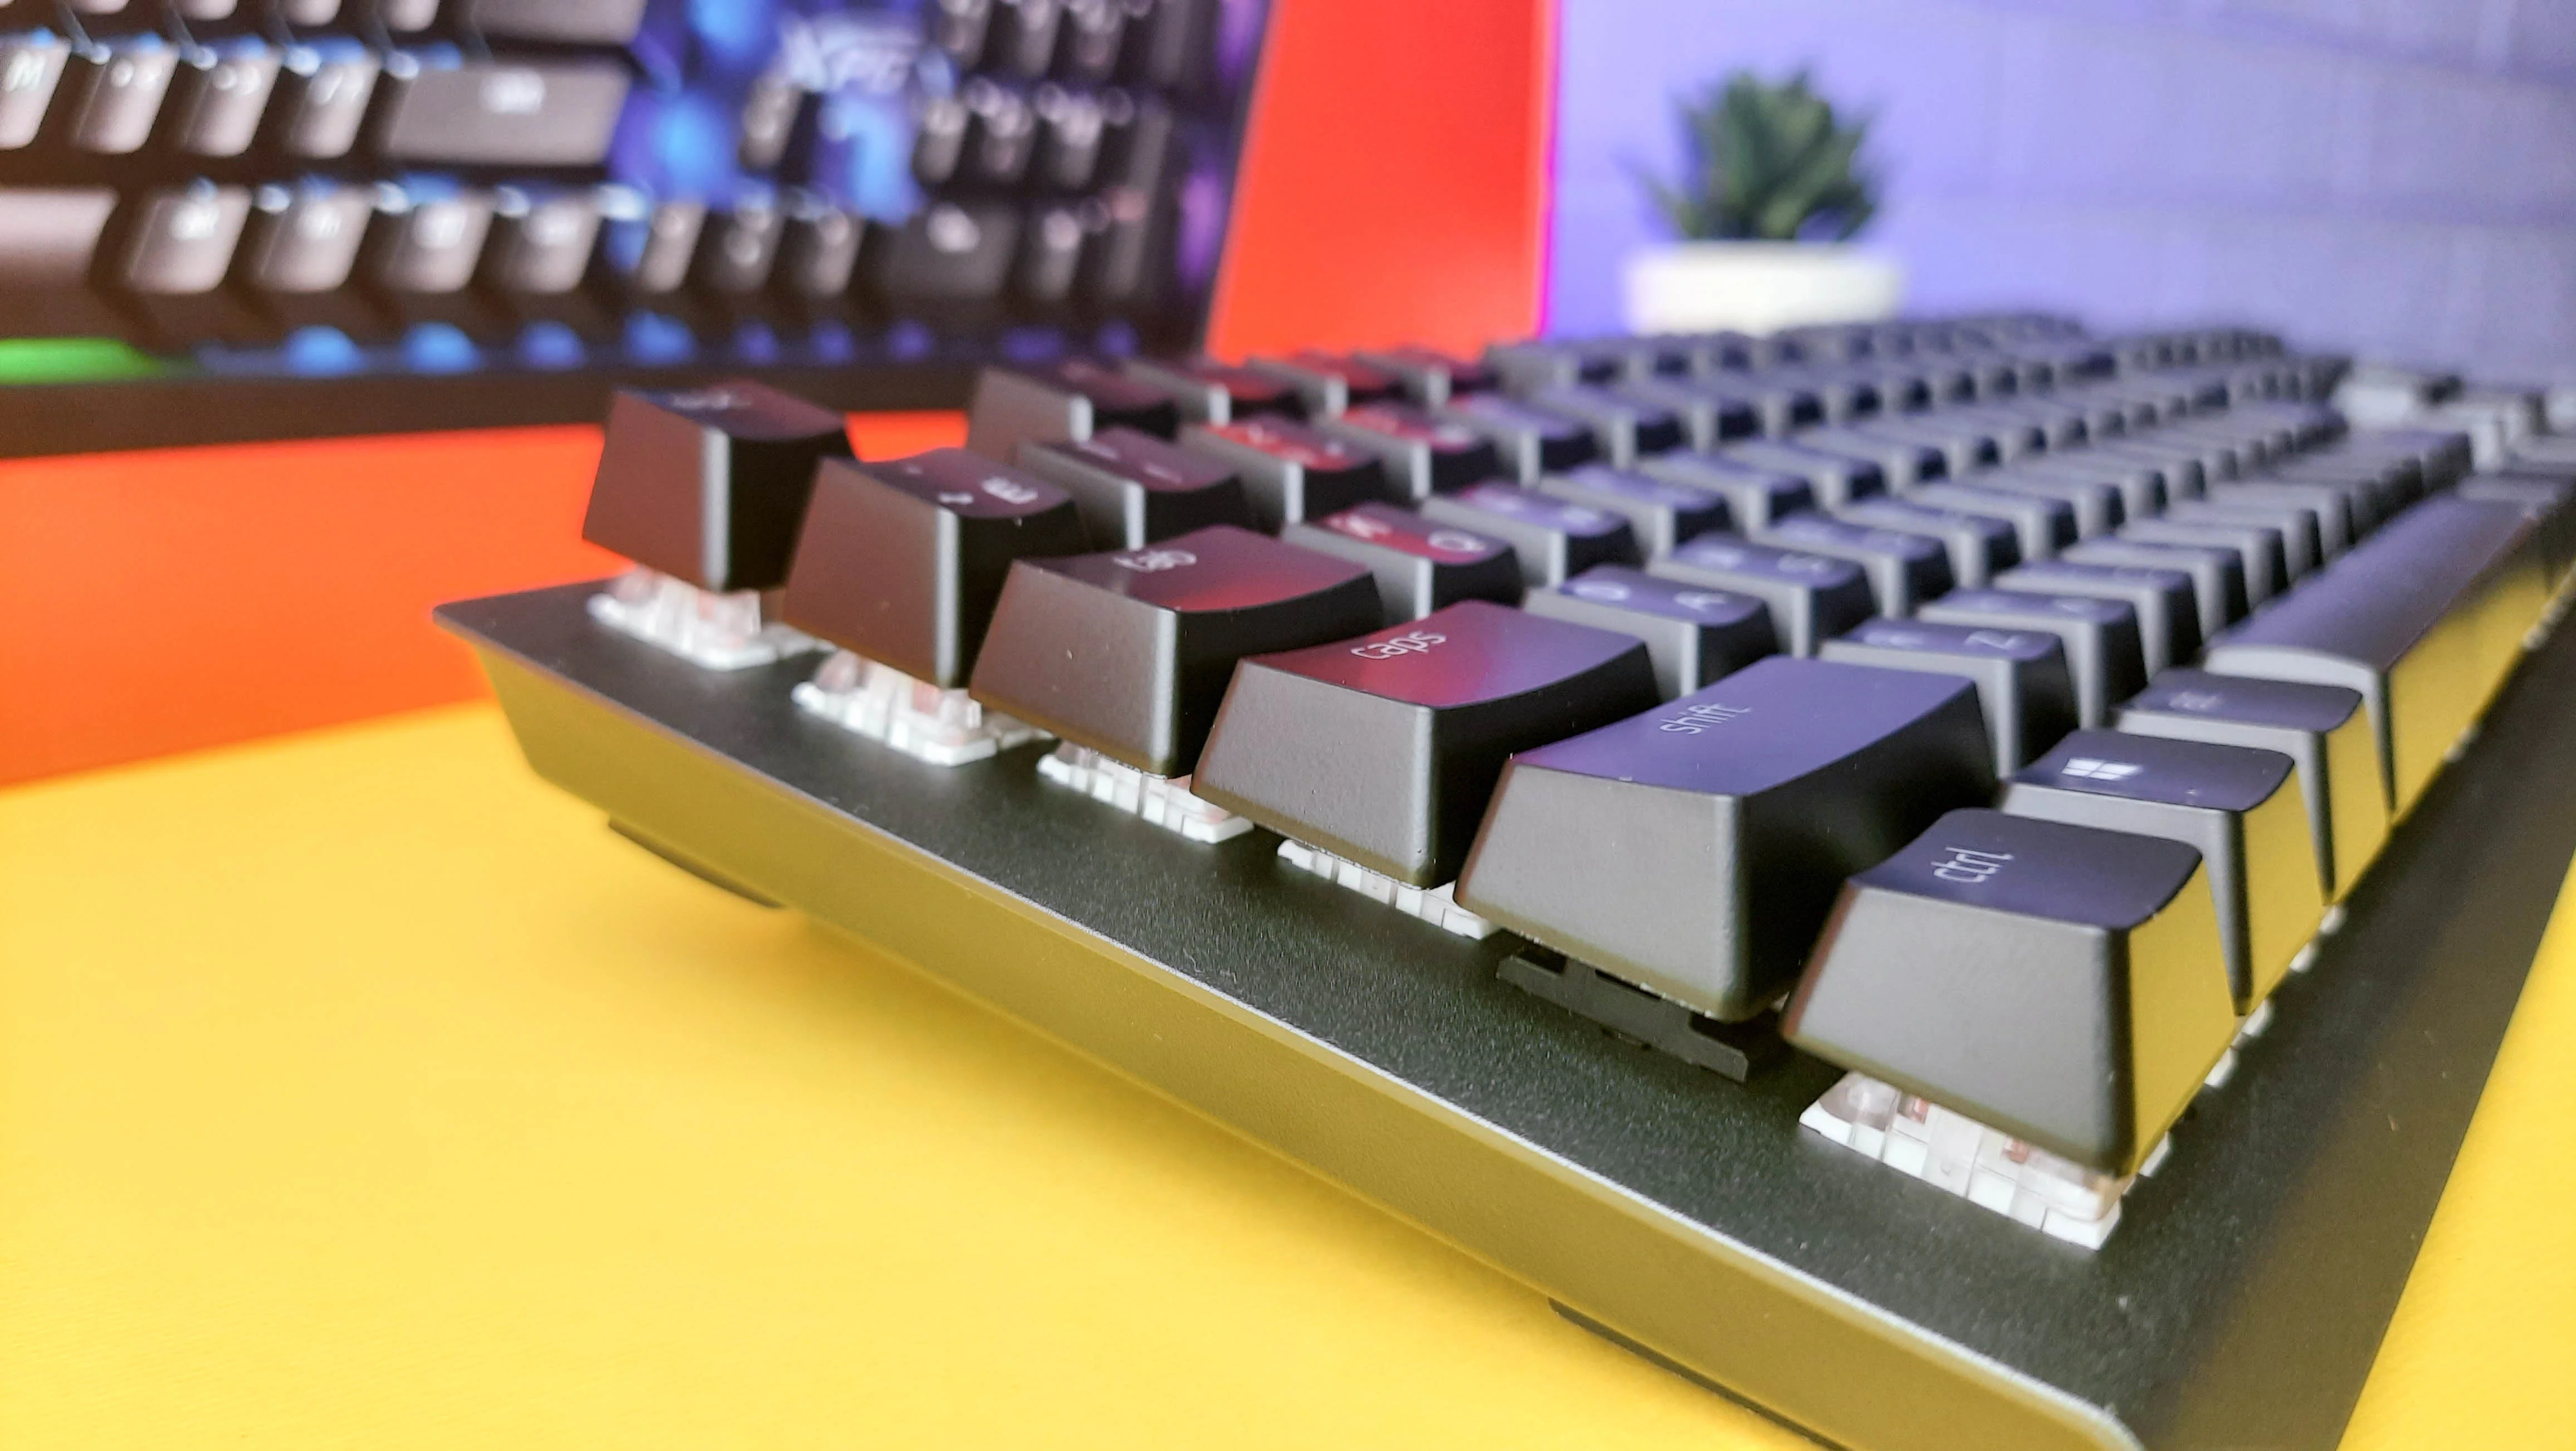 Обзор XPG Mage: игровая механическая клавиатура с RGB-подсветкой и съёмным кабелем - фото 11